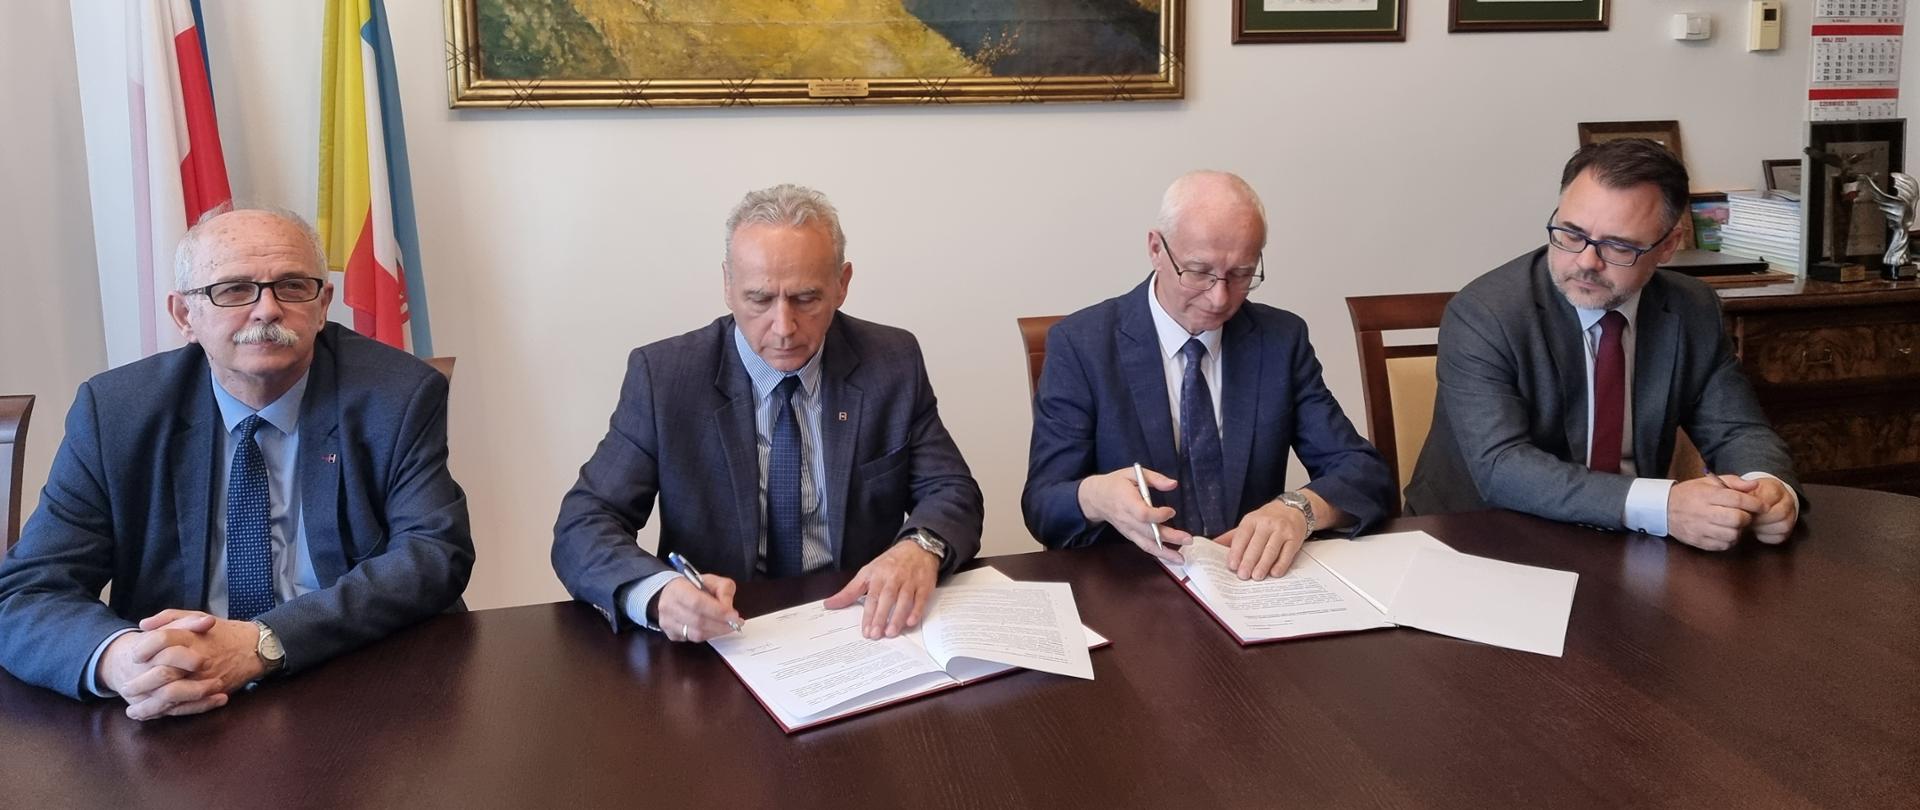 Podpisanie umowy o współpracy - czterej przedstawiciele Politechniki i GDDKiA przy stole konferencyjnym - dwaj podpisują egzemplarze umowy 